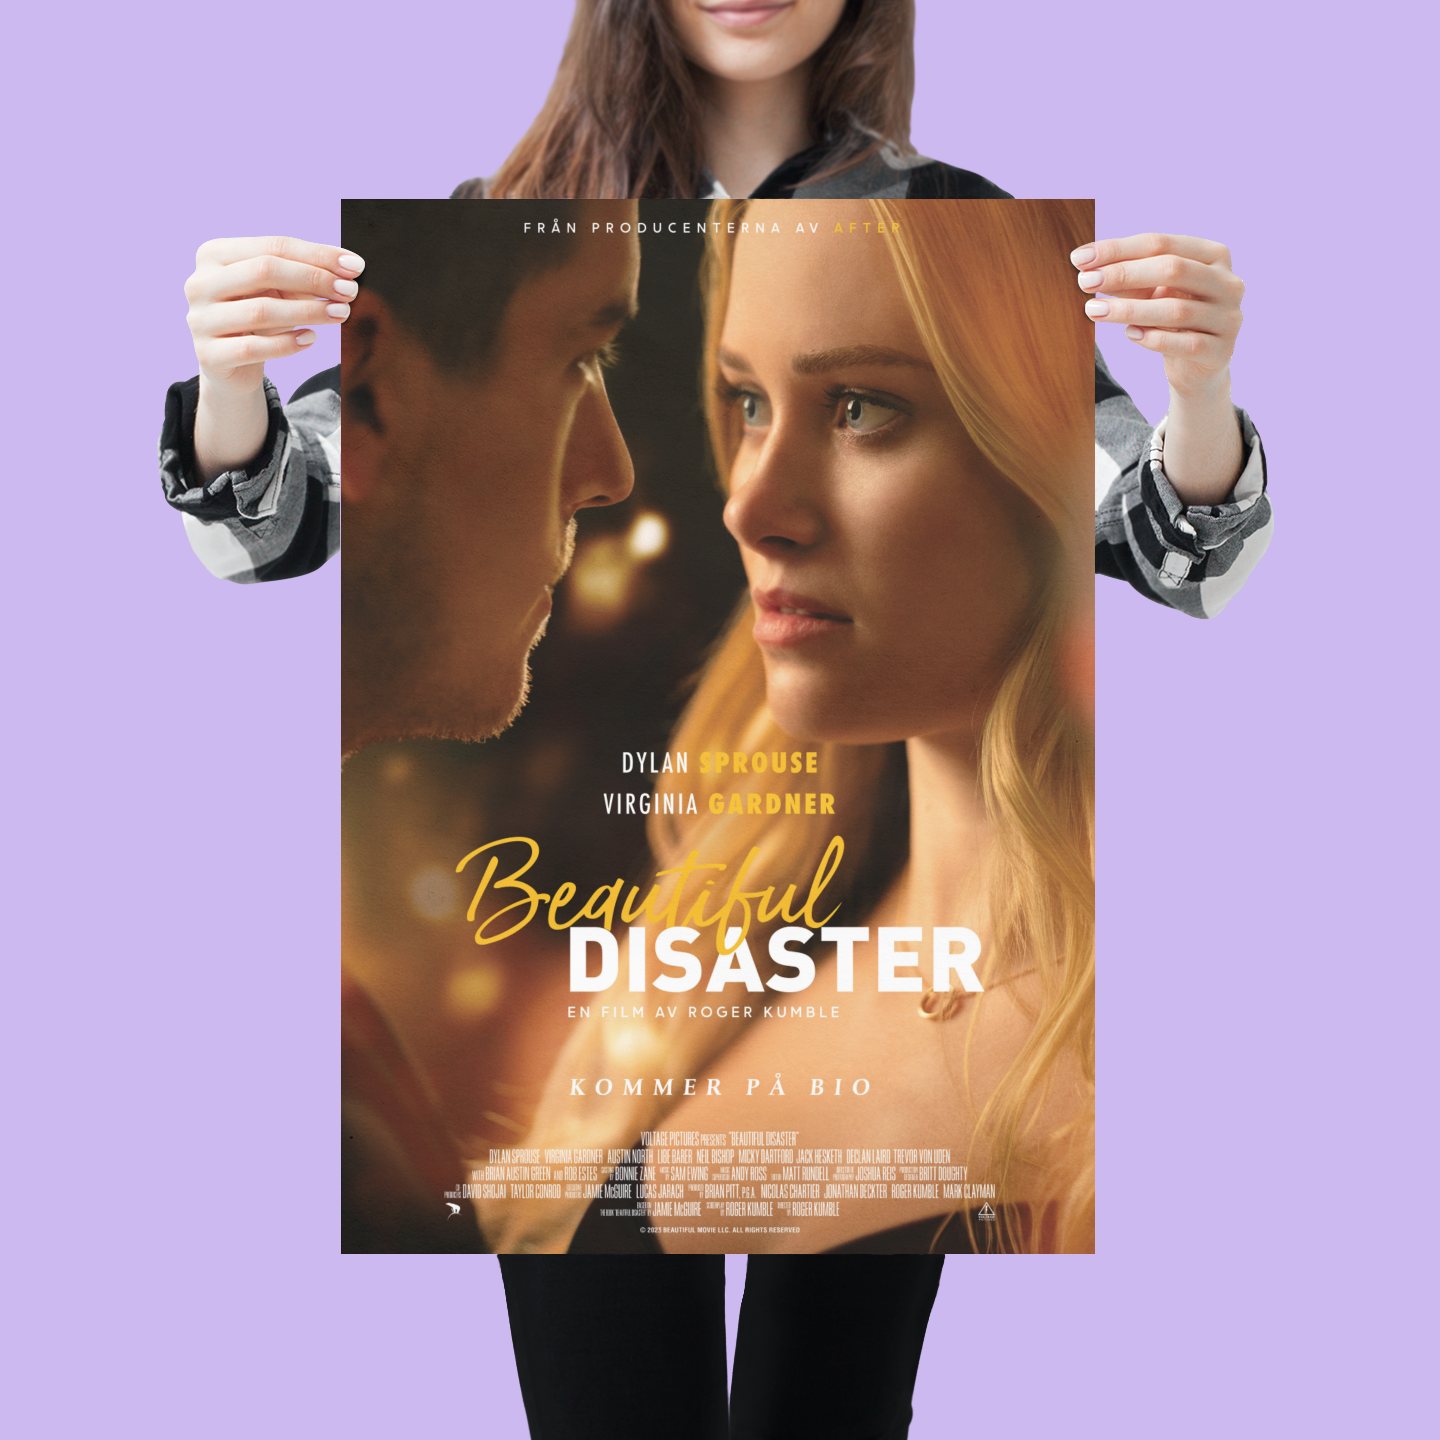 Beautiful Disaster (Dylan Sprouse, Virginia Gardner) Movie Poster